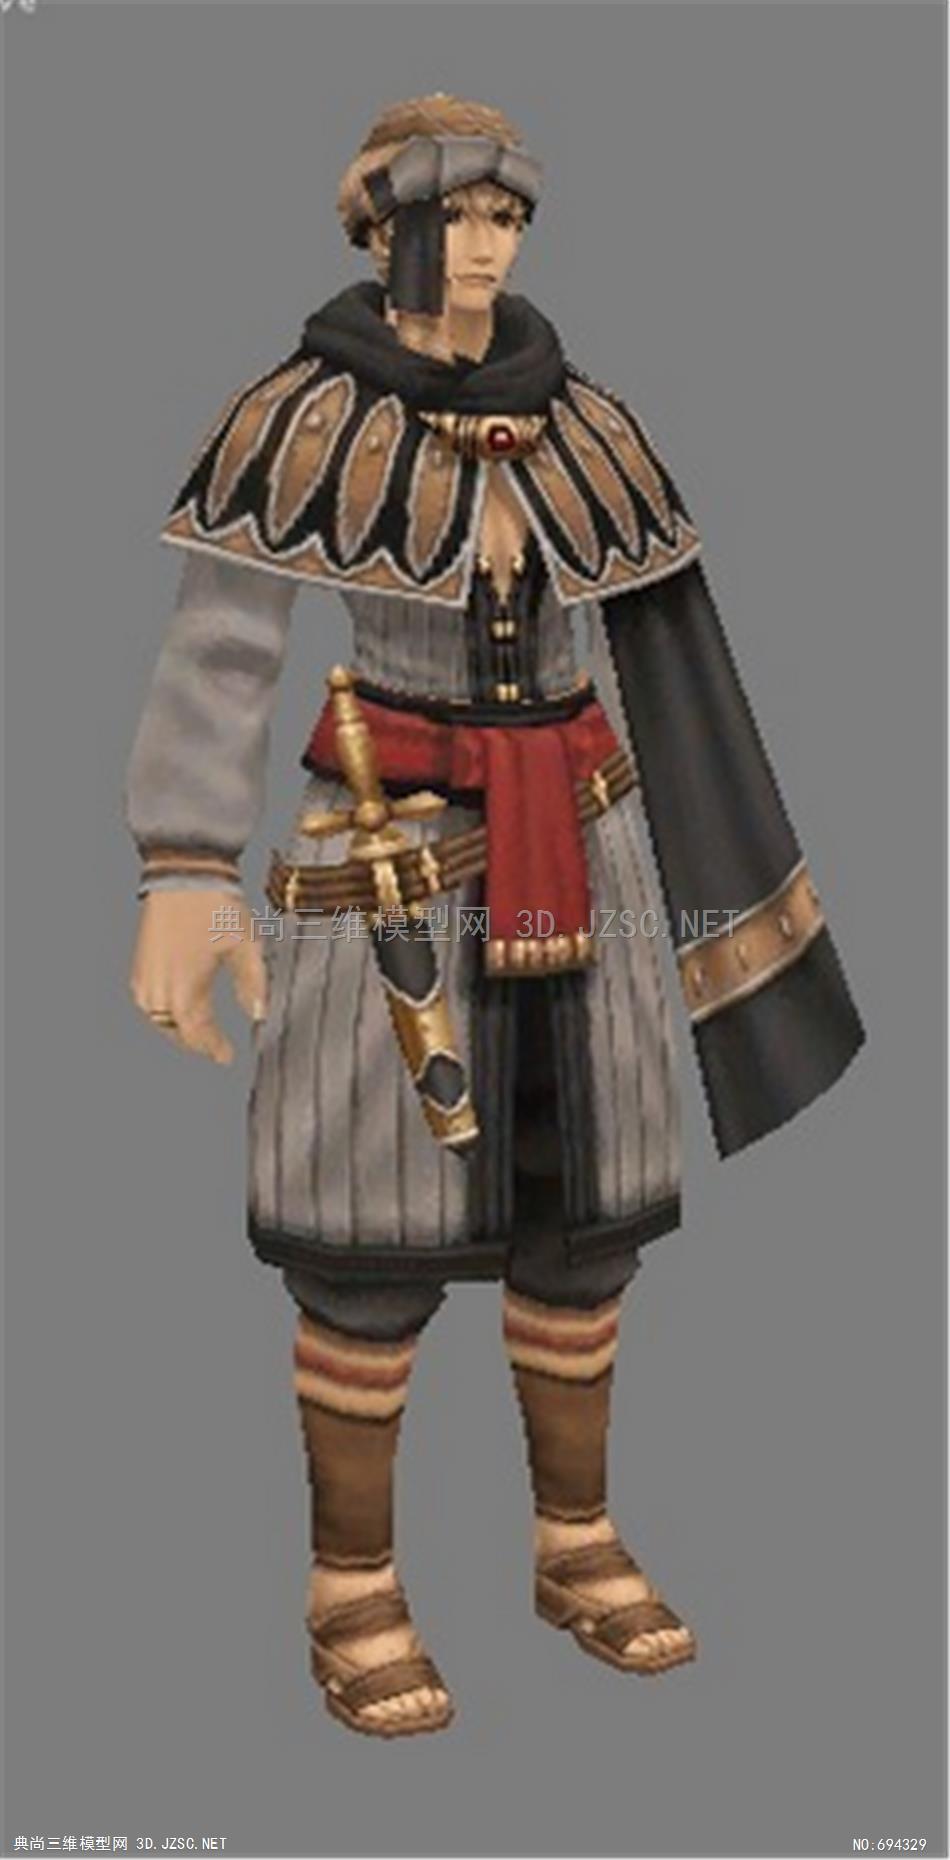 屏幕截图游戏人物人物角色单体模型一个带毡帽的男角色